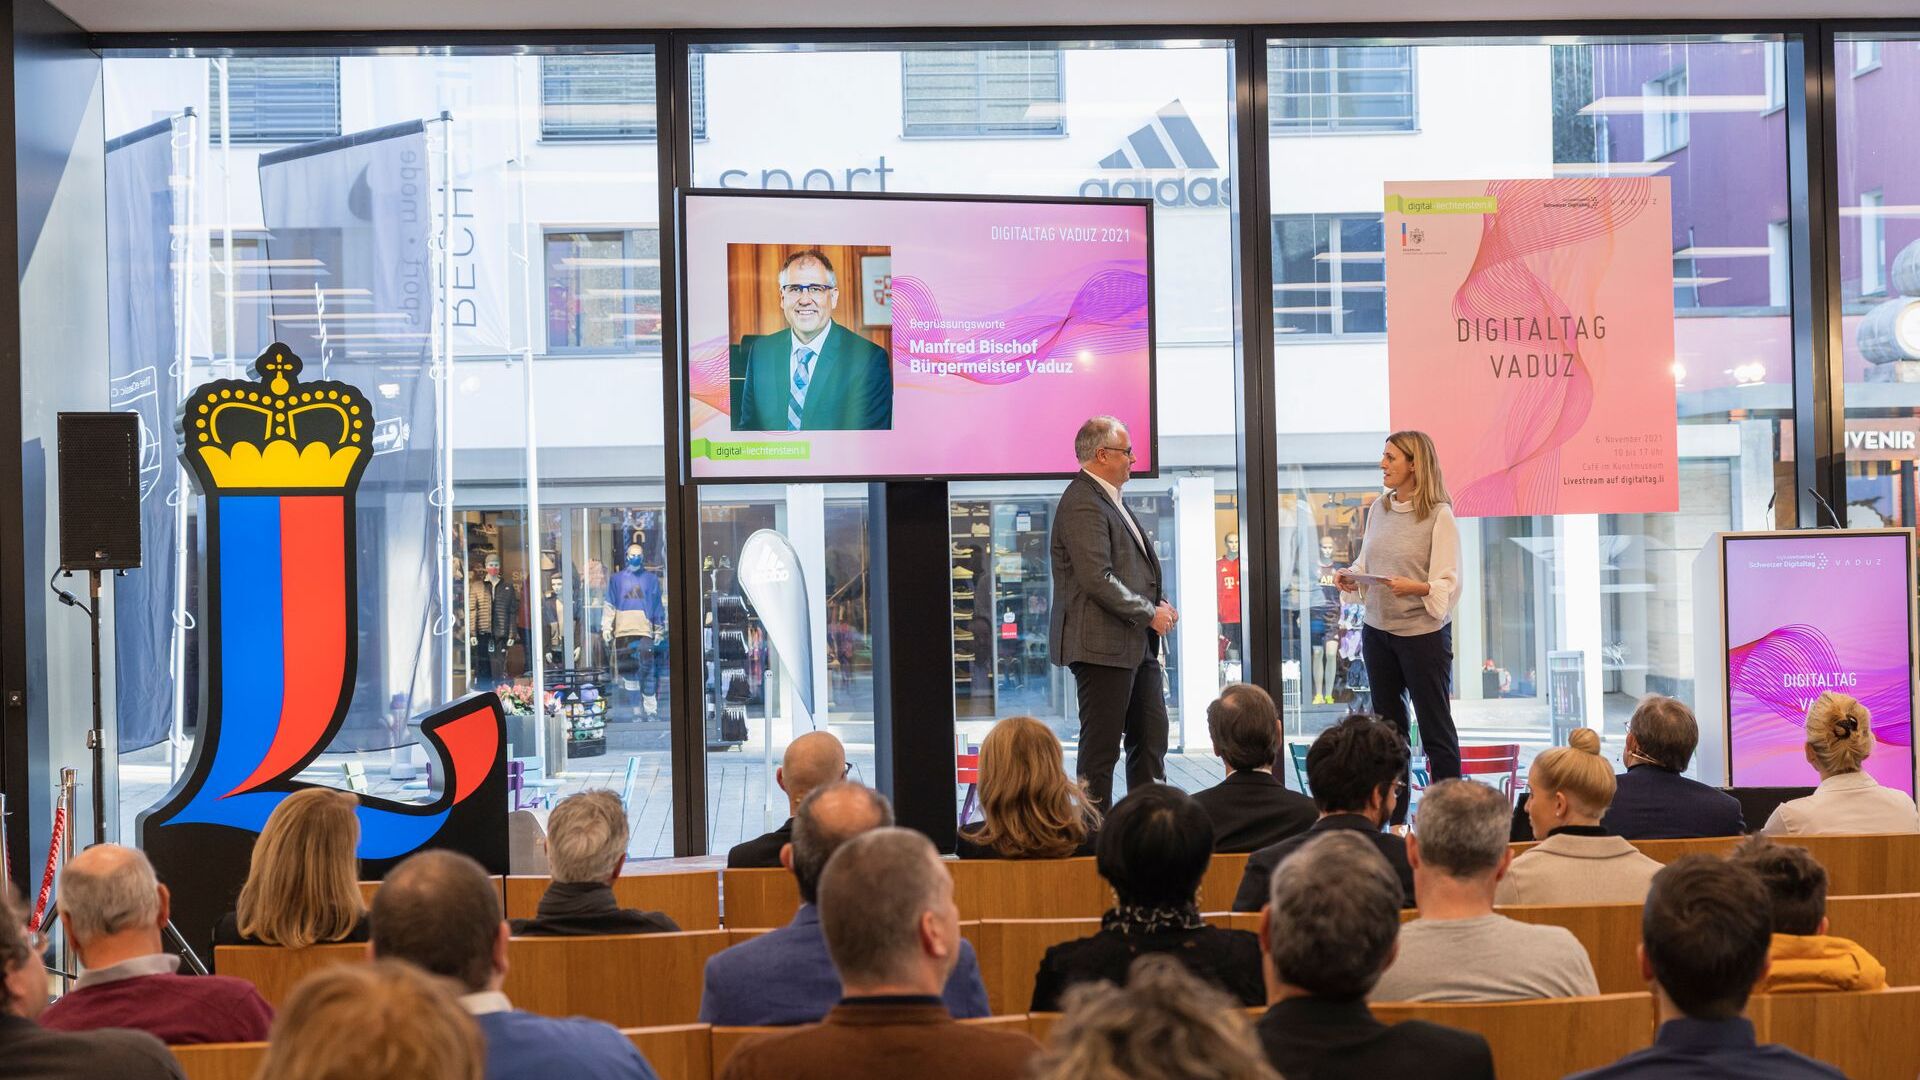 „Дигиталтаг Вадуз“, који је Музеј уметности главног града Кнежевине Лихтенштајн дочекао у суботу 6. новембра 2021, изазвао је ентузијазам јавности и говорника у аналогији са „Швајцарским дигиталним даном“ следећег 10. дана: интервенција градоначелника главног града Манфреда Биша.